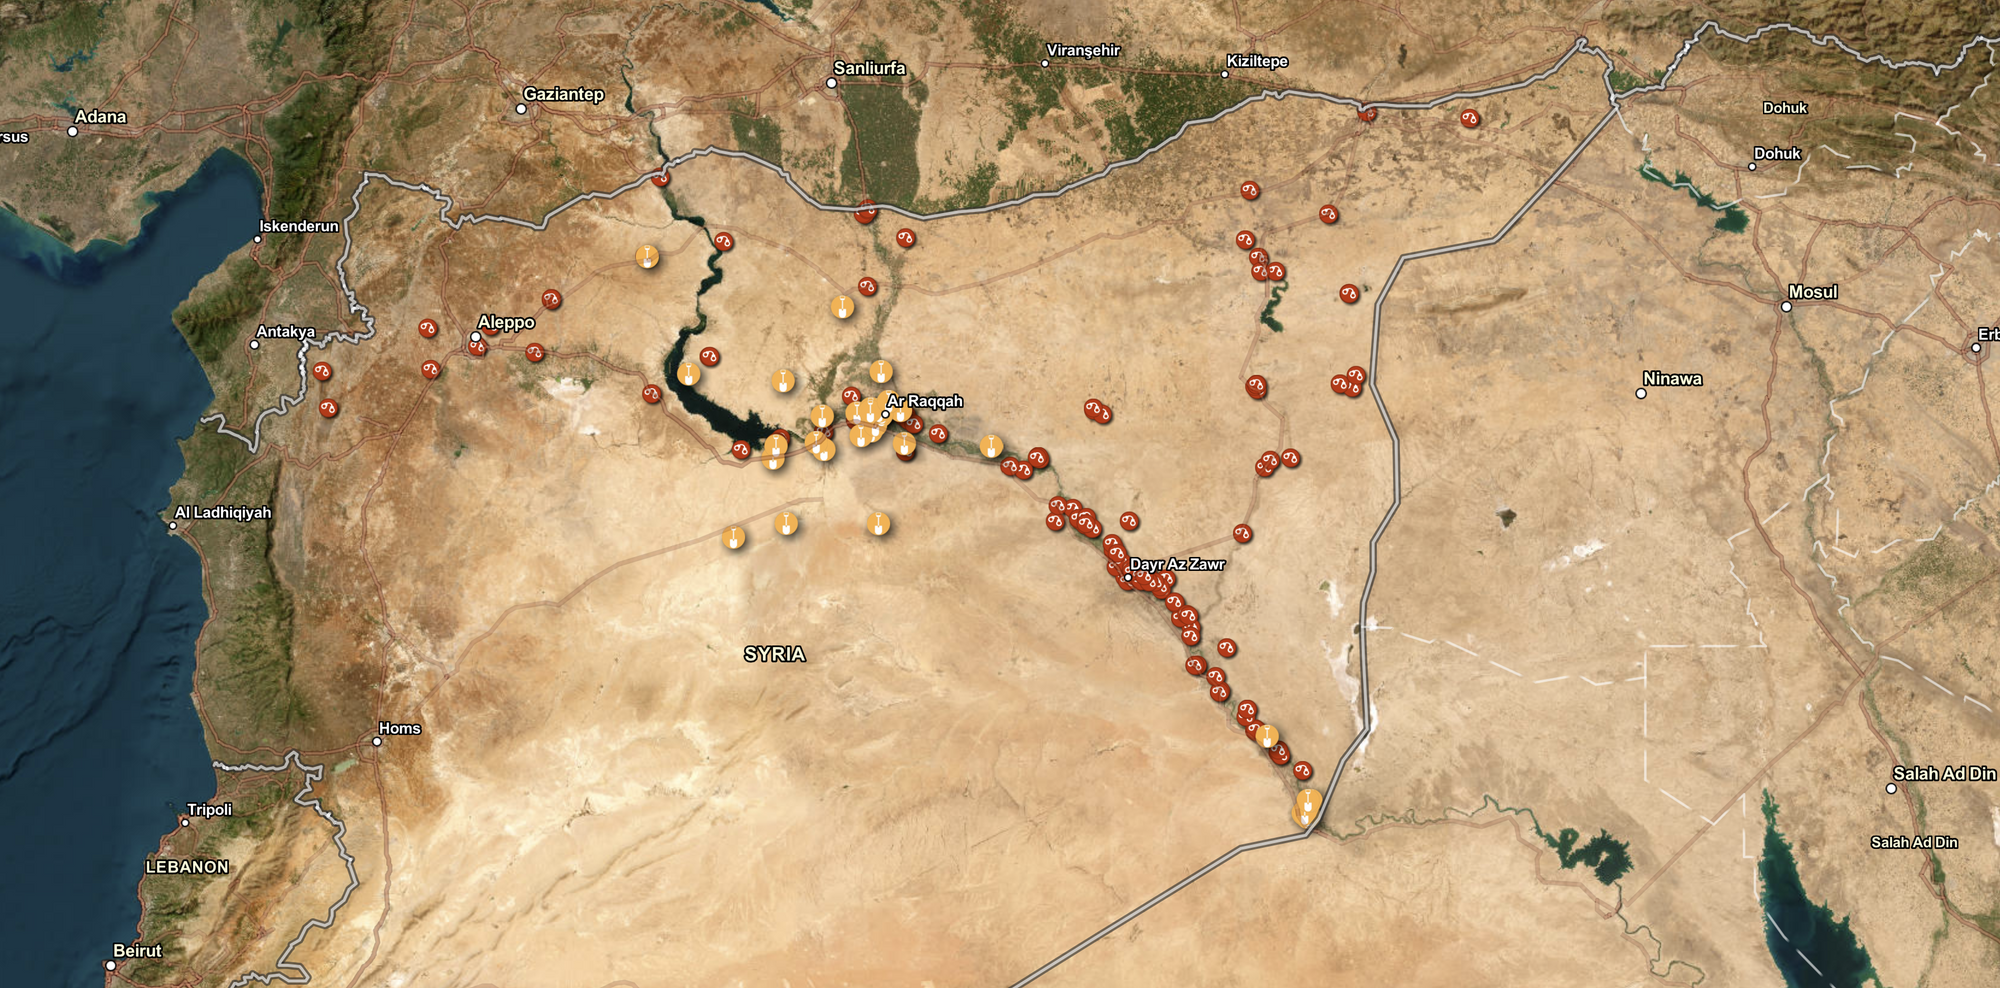 المركز السوري للعدالة والمساءلة يتمكن من تحديد مواقع جديدة تضم 66 سجناً من سجون داعش، و35 مقبرة جماعية